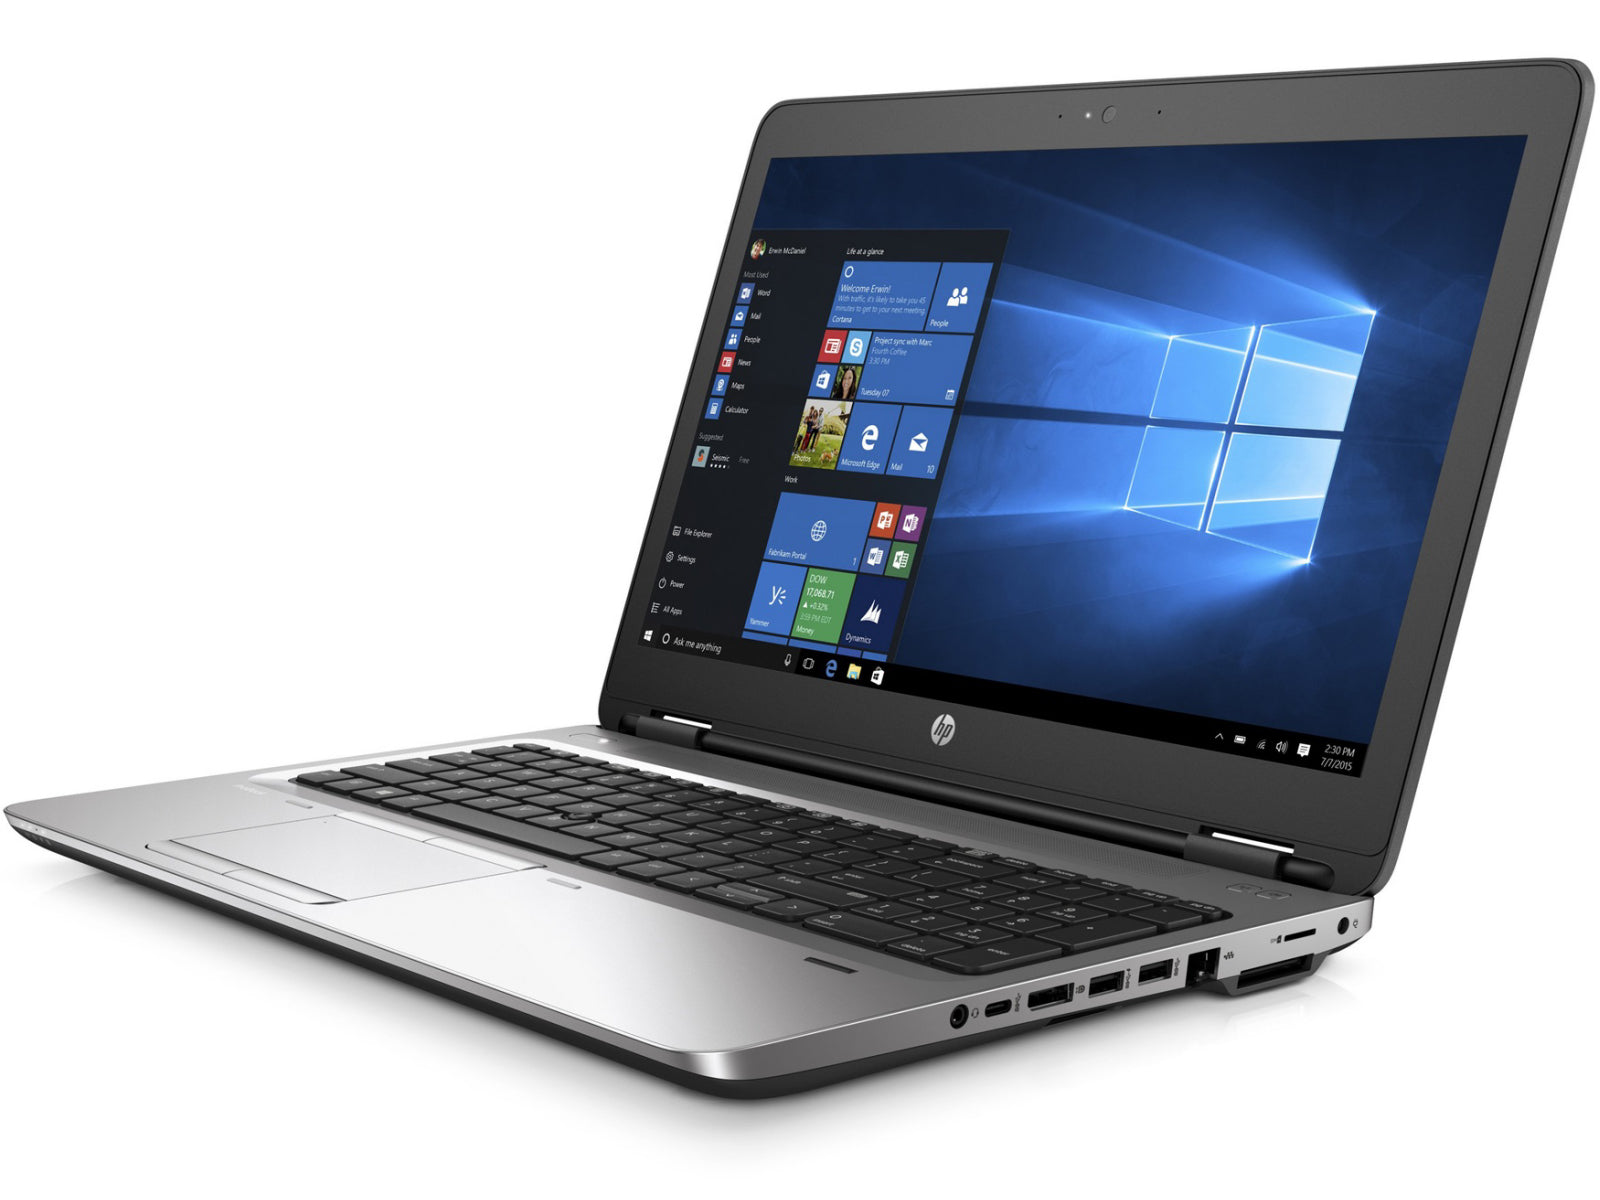 NOTEBOOK HP PROBOOK 650 G2 Touchscreen 15.6” (i5 8GB 256GB SSD) Reacondicionado Grado B